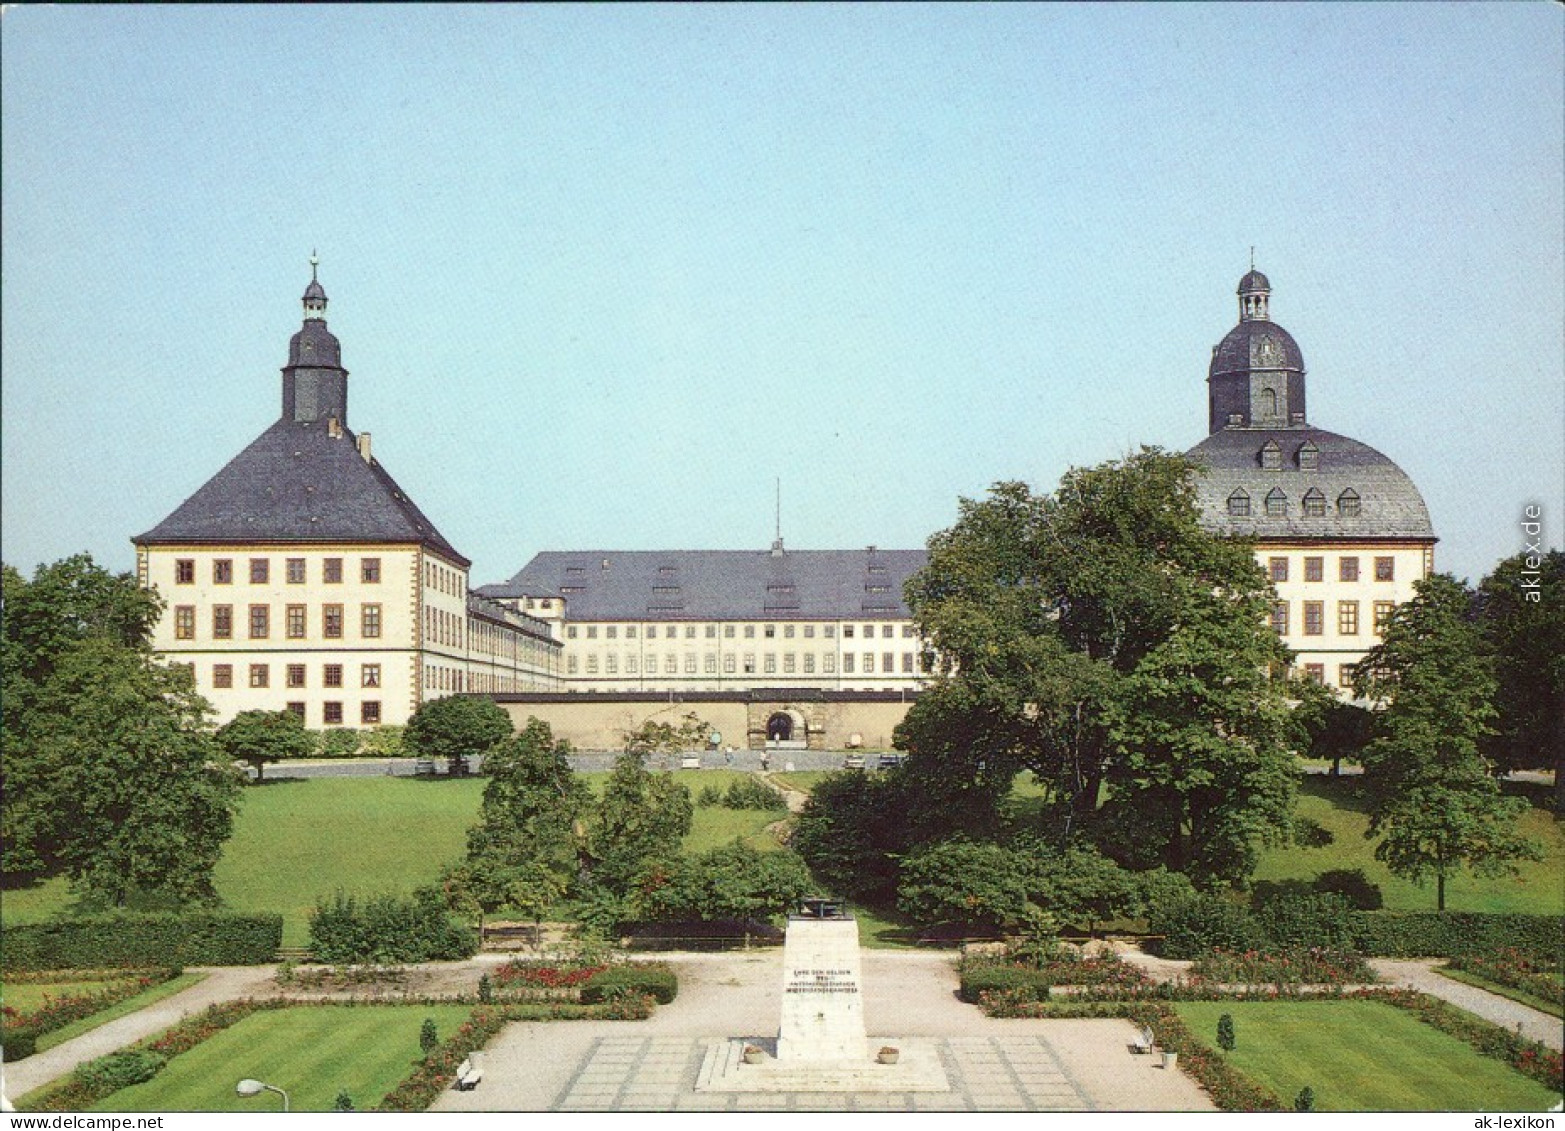 Ansichtskarte Gotha Schloß Friedenstein 1989 - Gotha